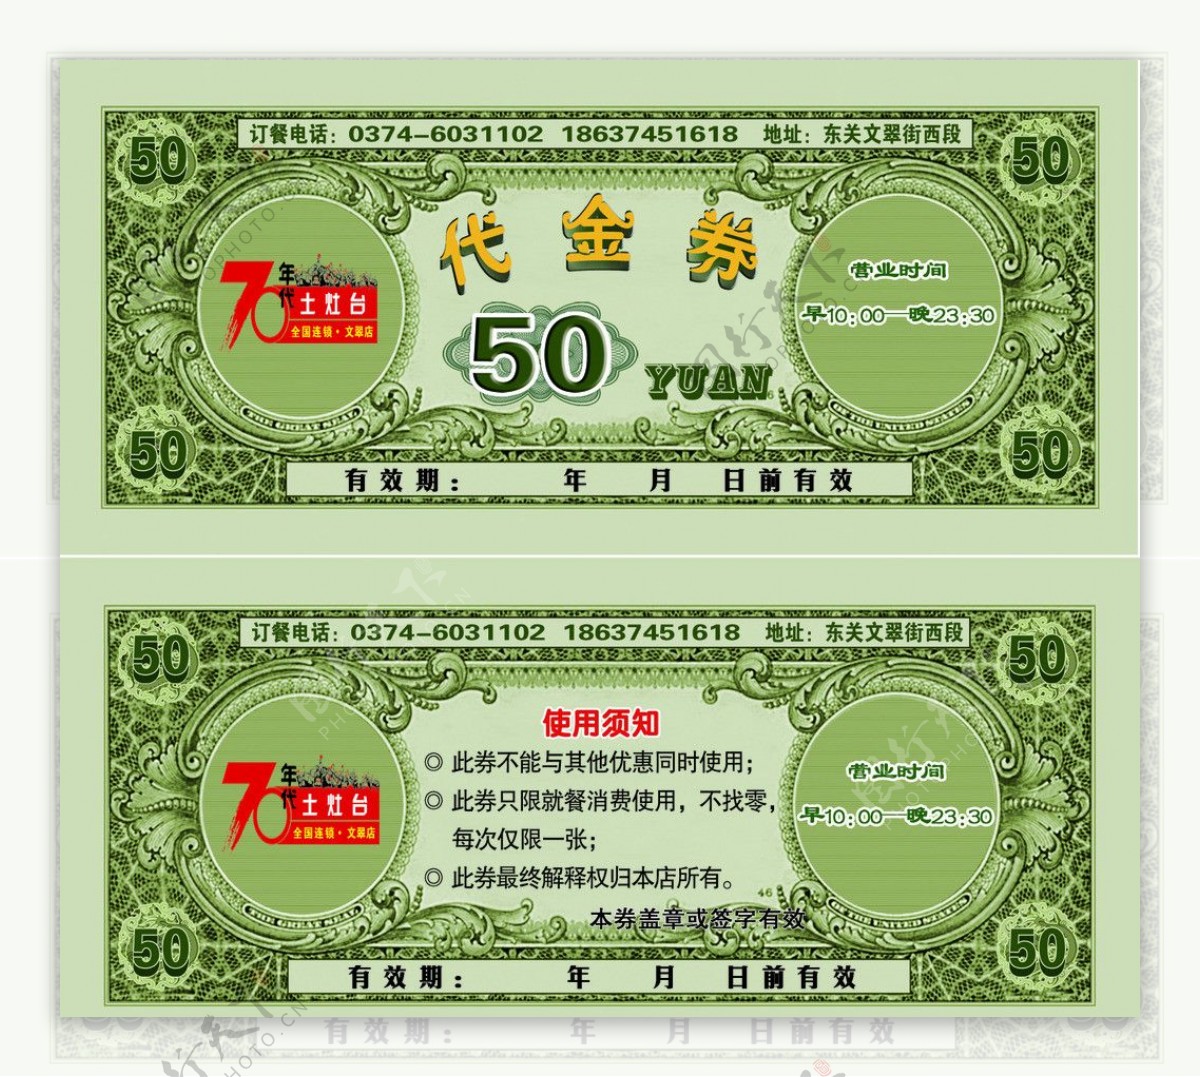 50元代金券